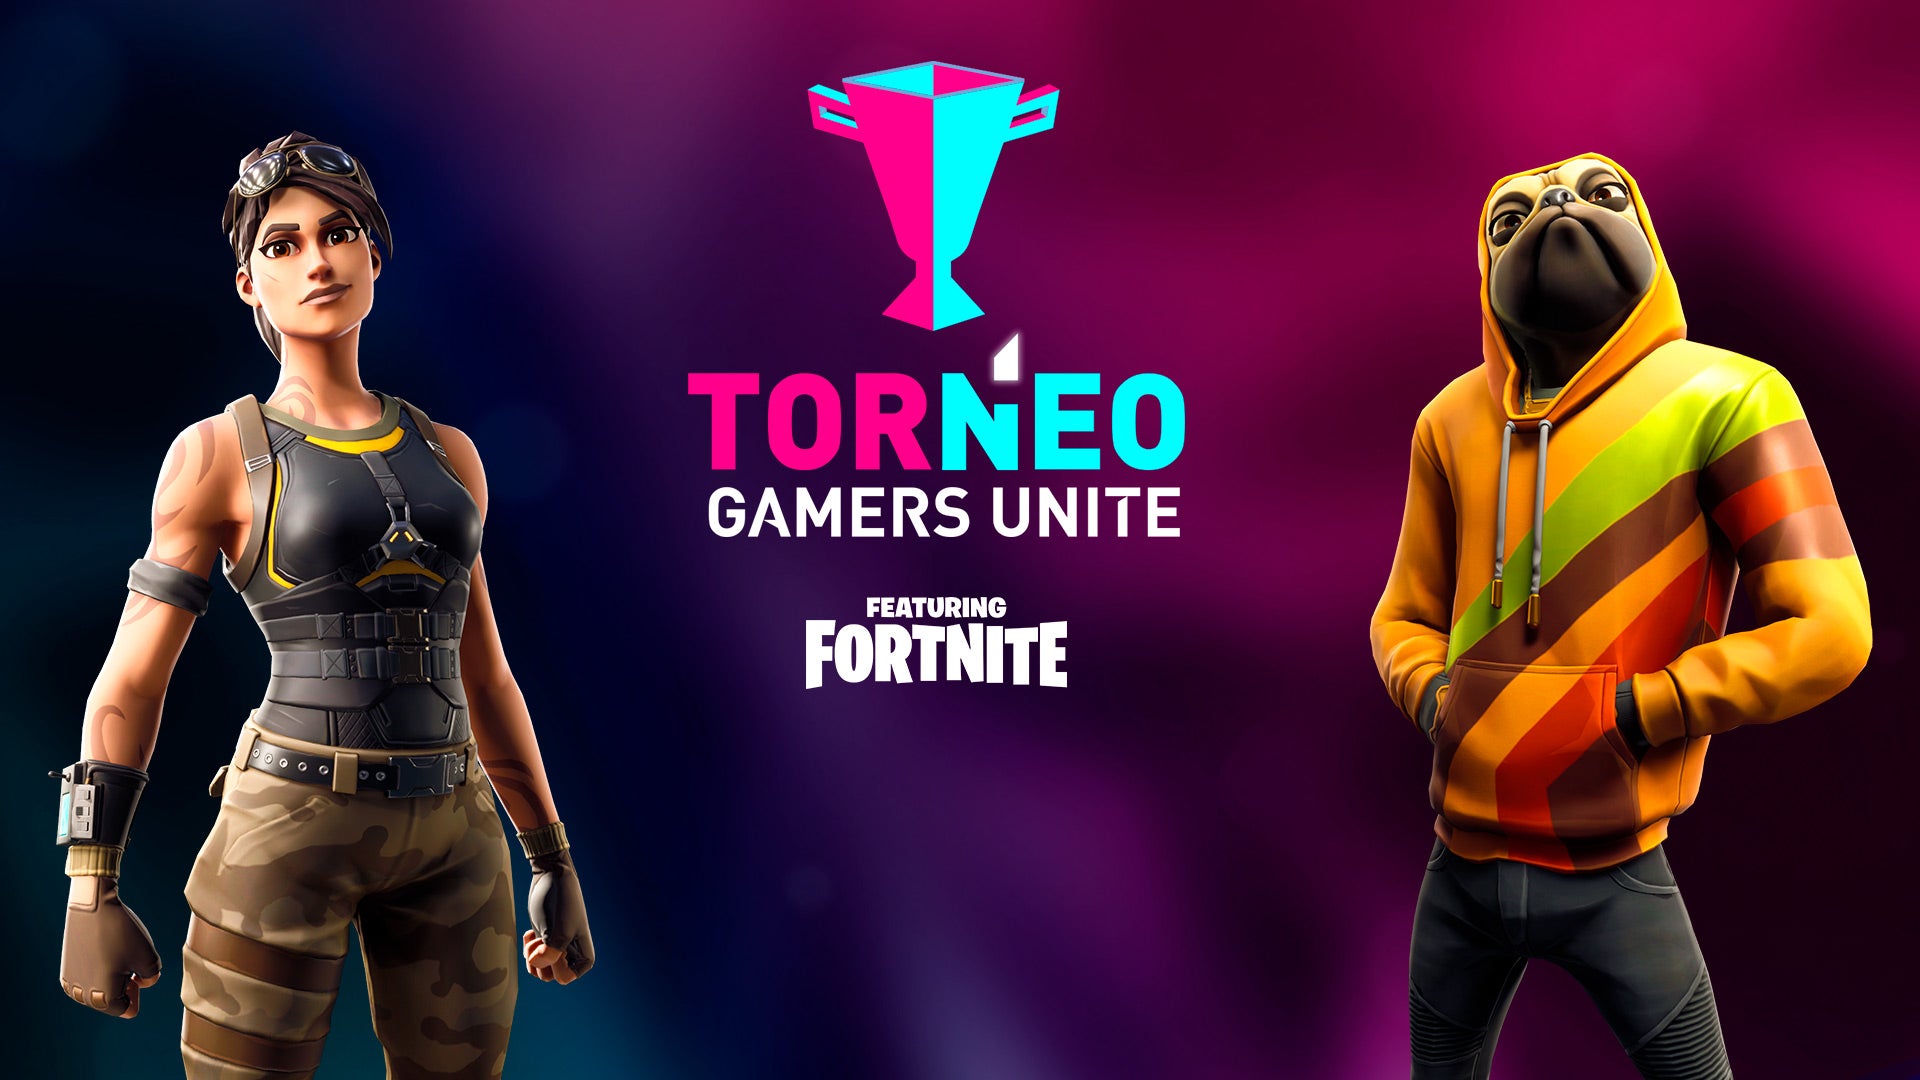 Gamers Unite llega a la escena de los esports con el Torneo de Fortnite más grande de México